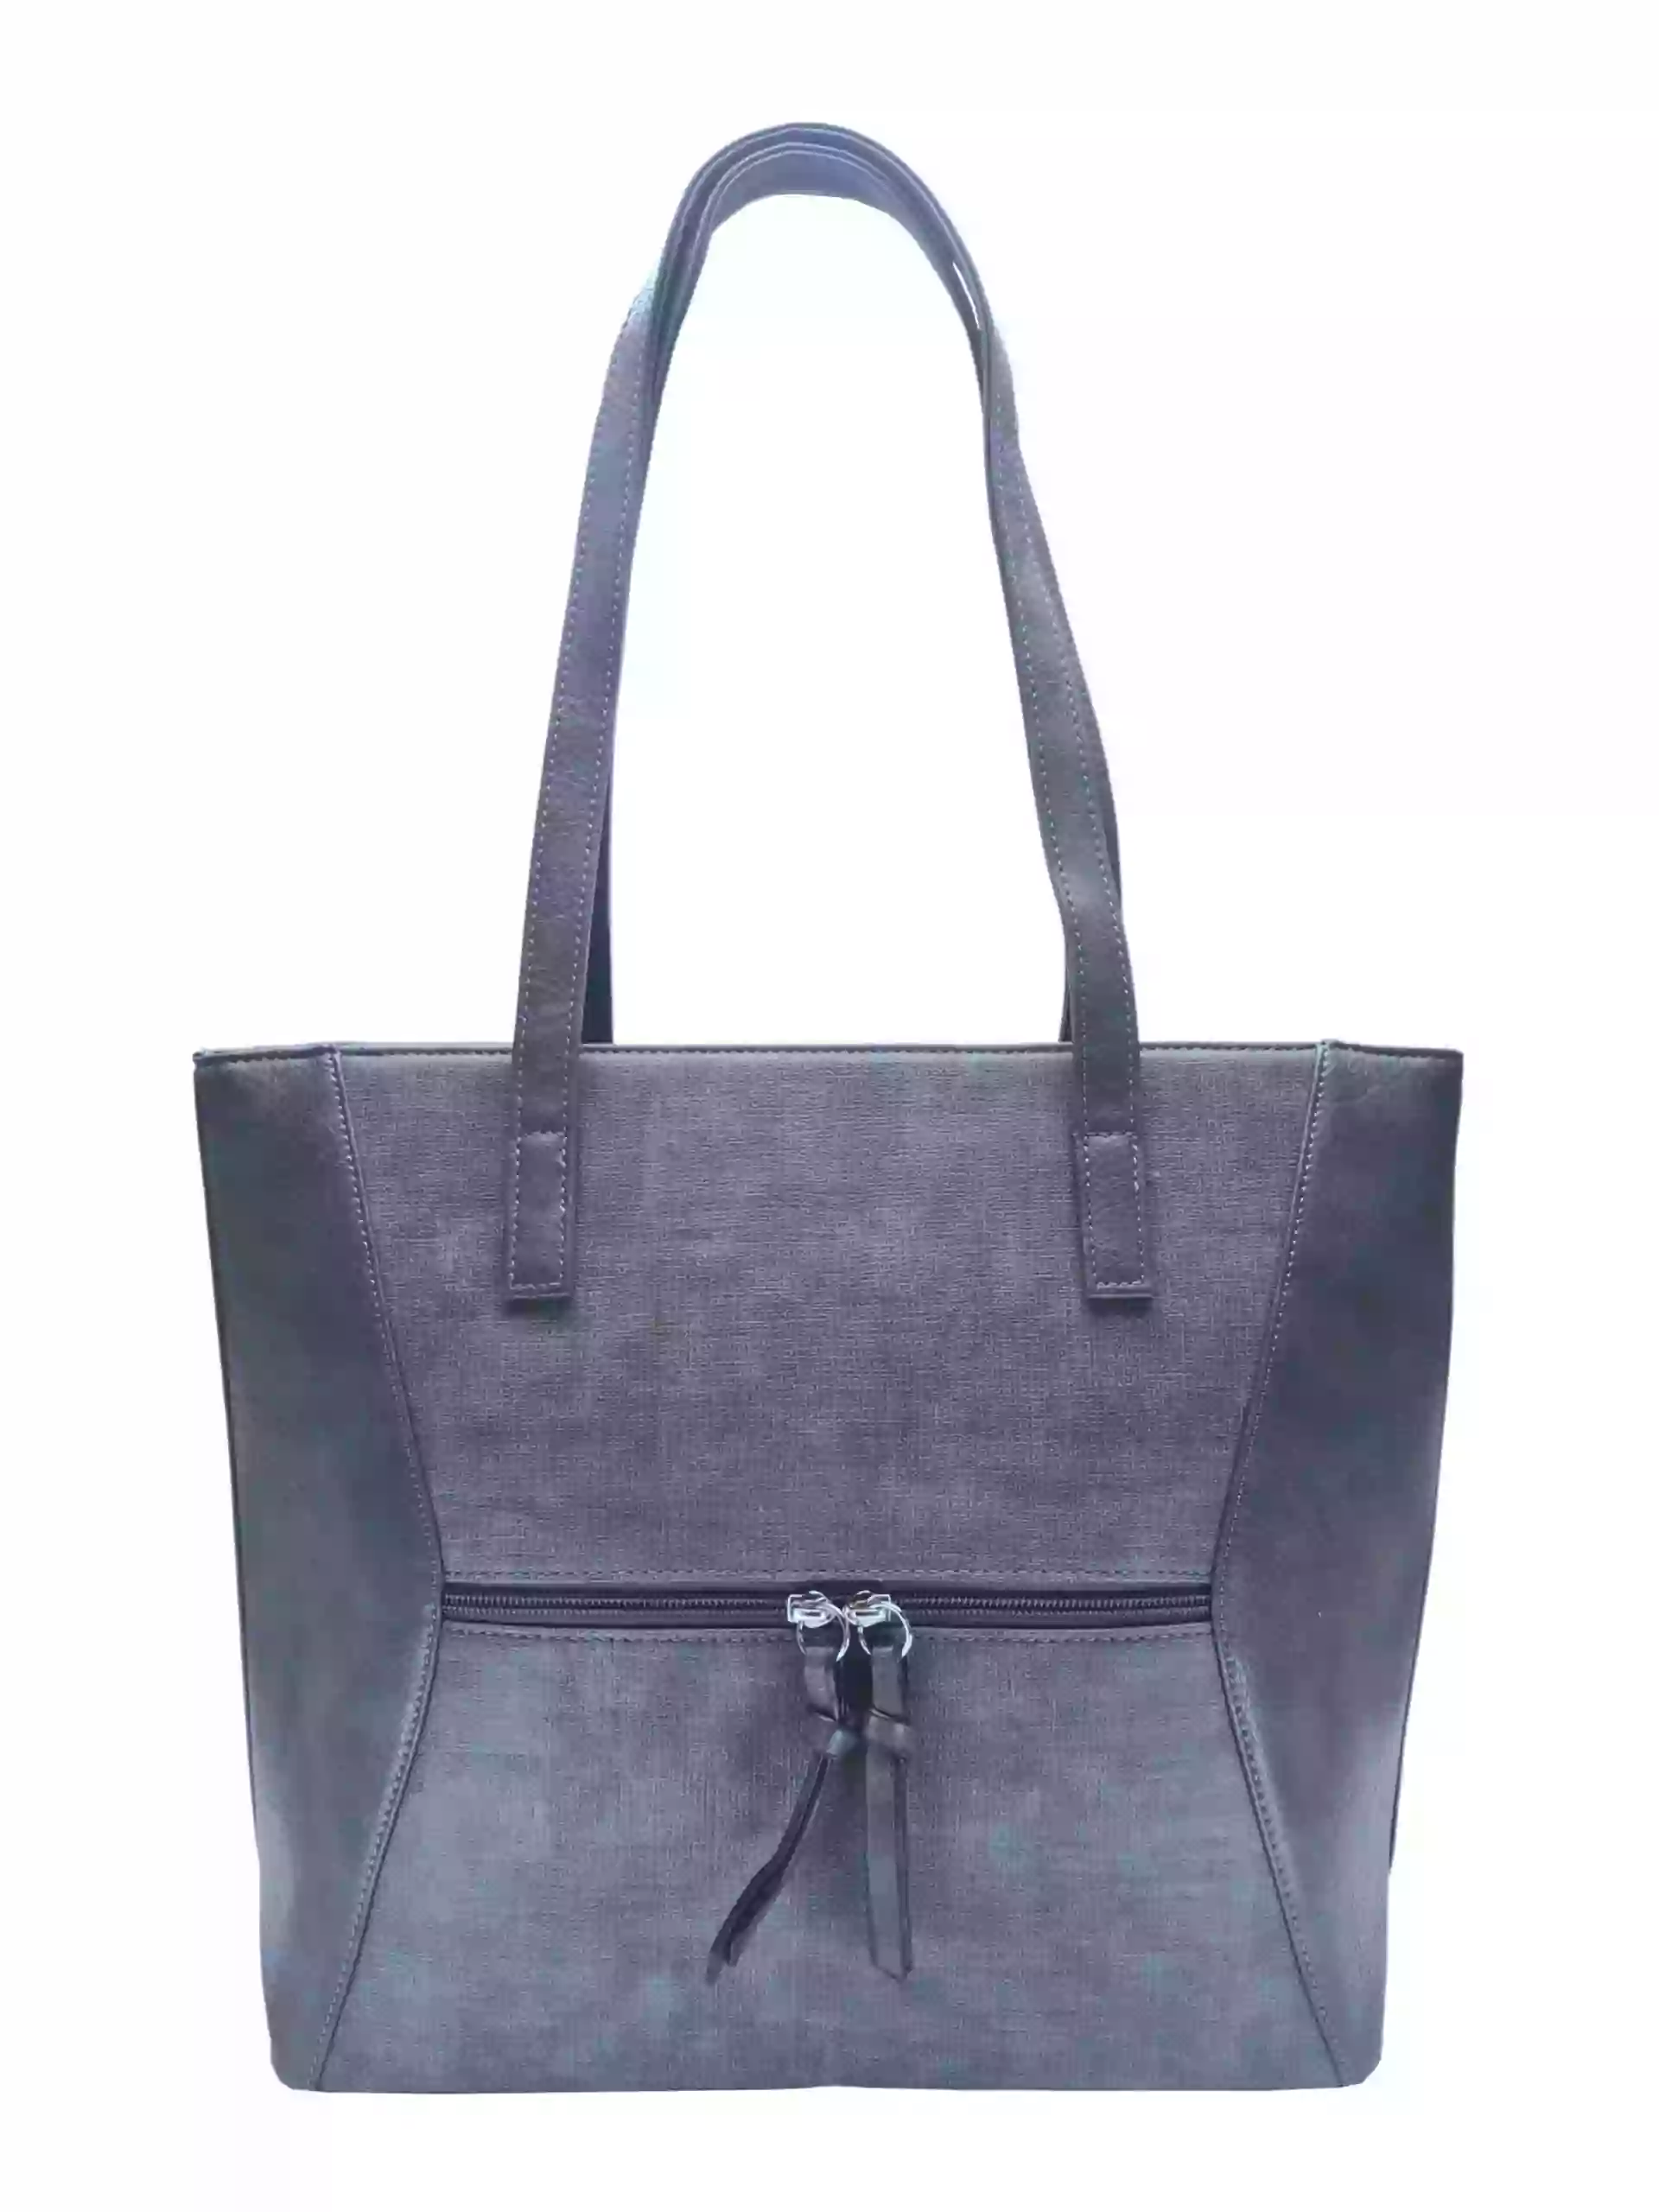 Dámská kabelka přes rameno se slušivým vzorem, Tapple H181178, tmavě šedá, přední strana kabelky